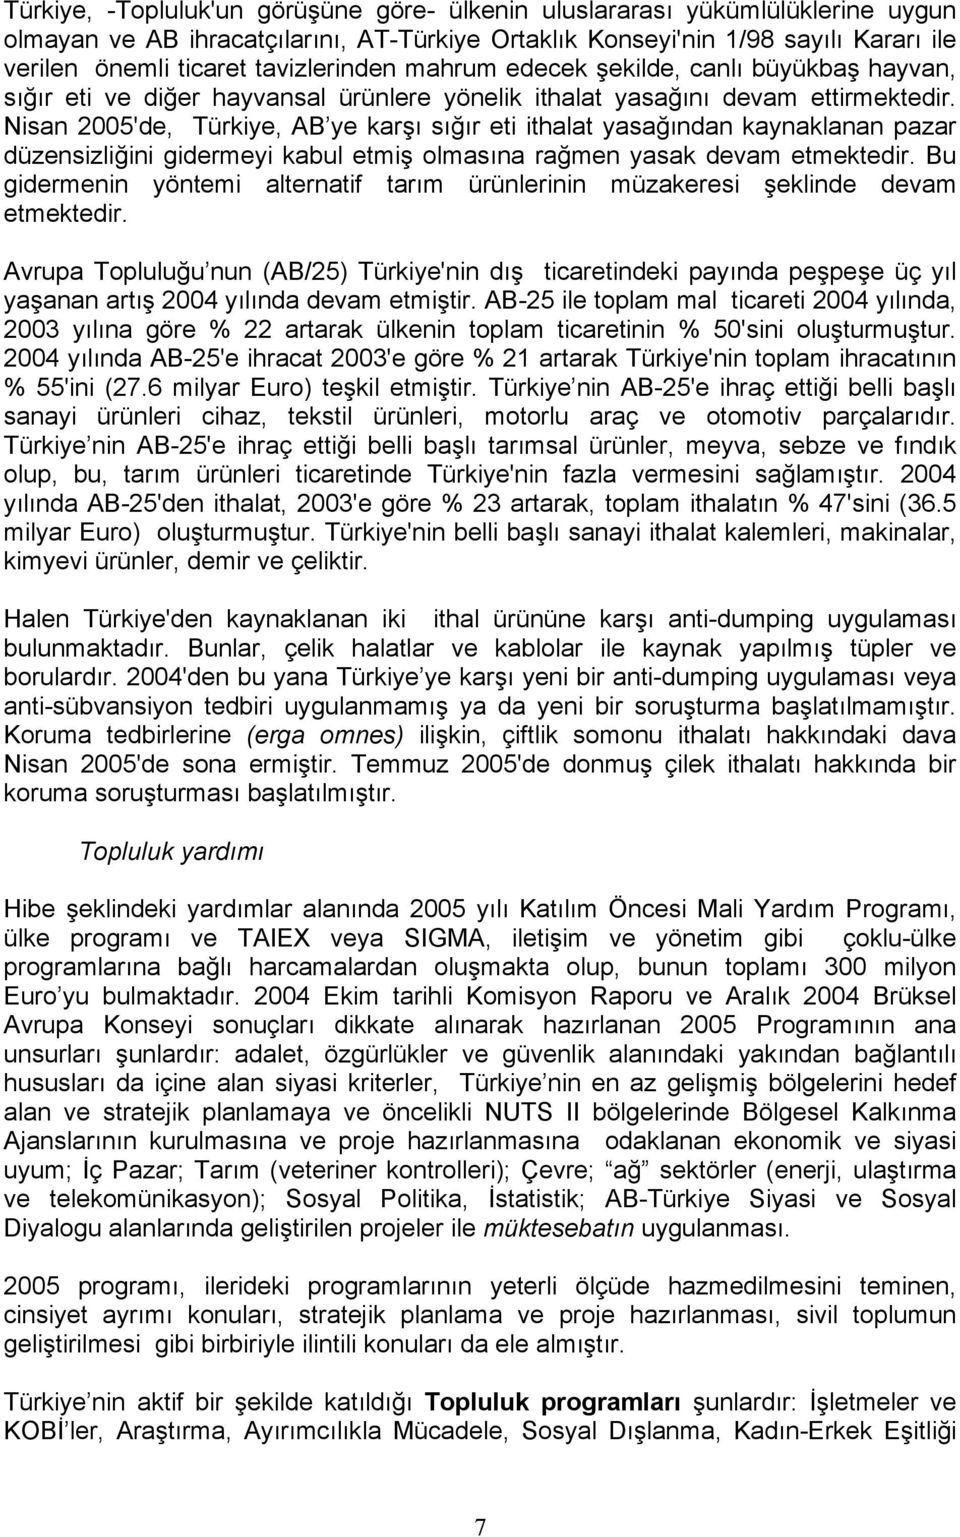 Nisan 2005'de, Türkiye, AB ye karşı sığır eti ithalat yasağından kaynaklanan pazar düzensizliğini gidermeyi kabul etmiş olmasına rağmen yasak devam etmektedir.